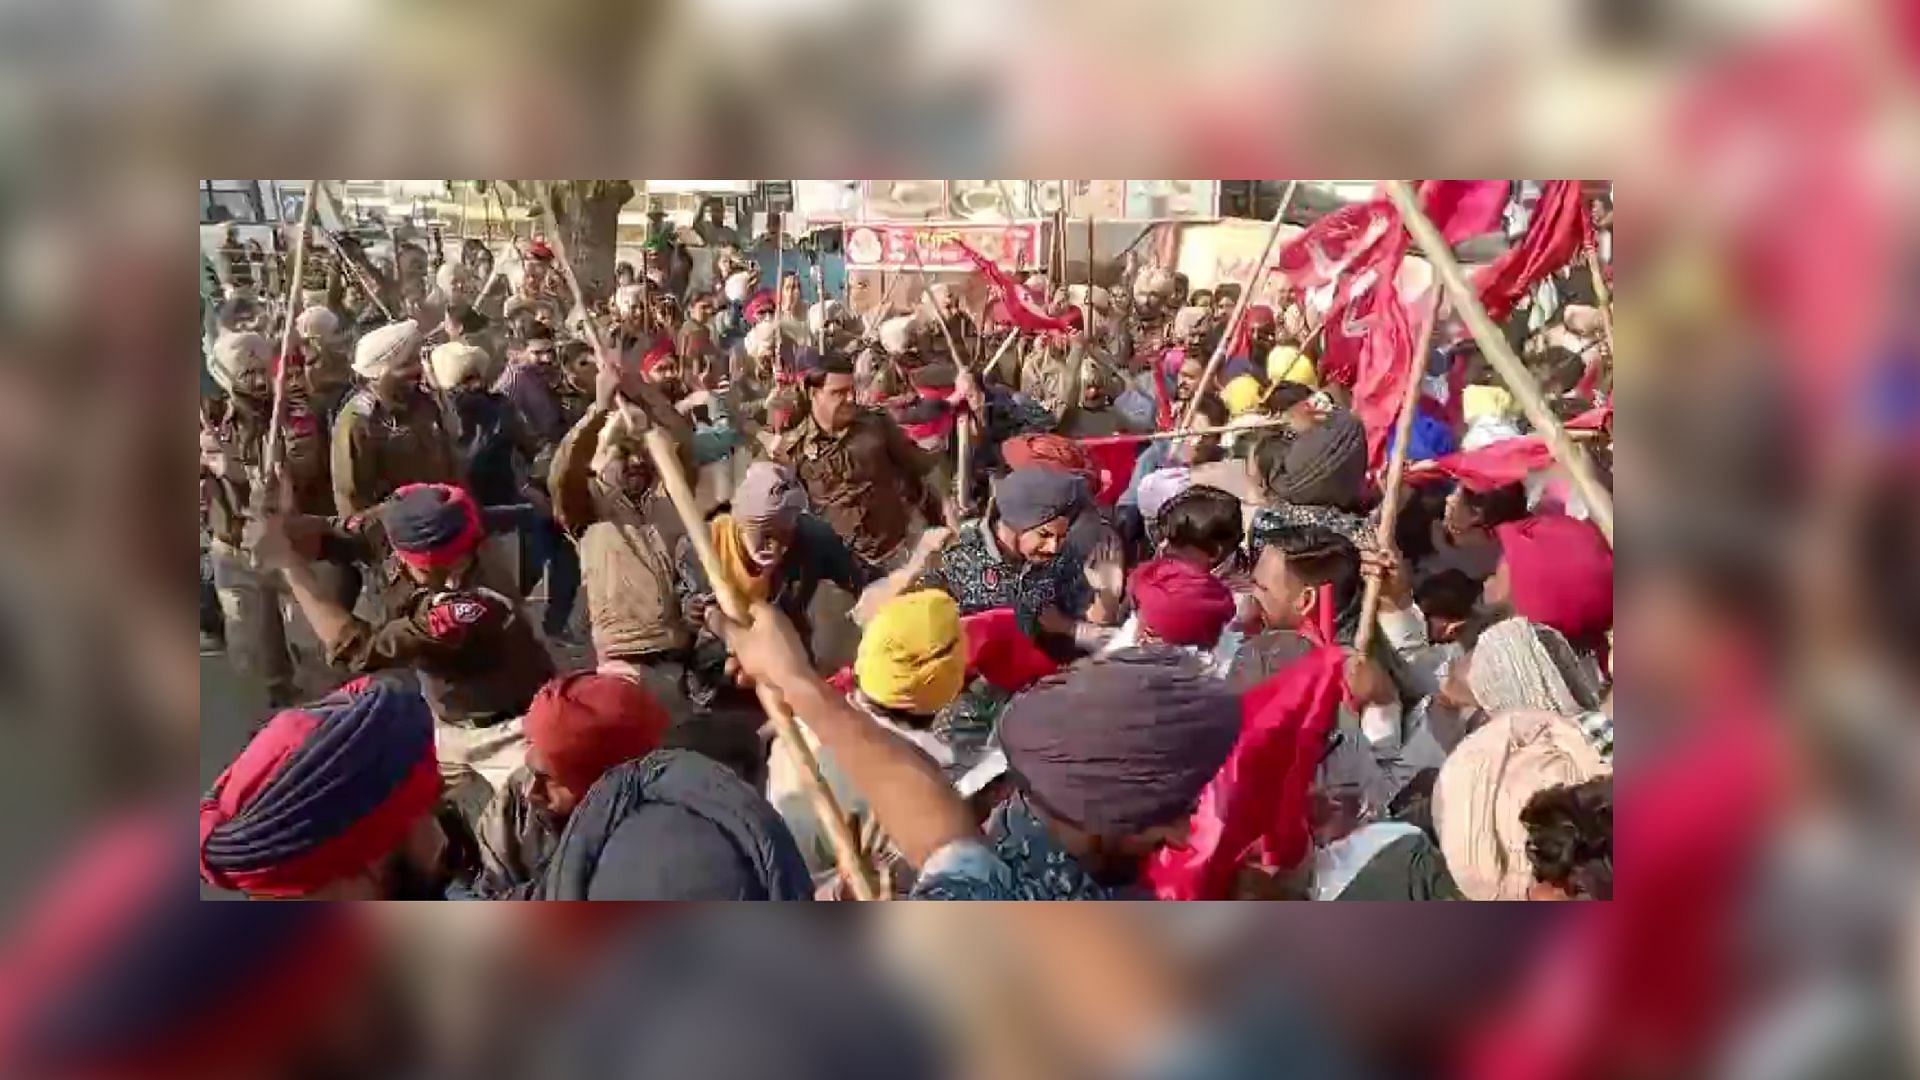 <div class="paragraphs"><p>Punjab: CM घर के बाहर मजदूरी बढ़ाने को लेकर प्रदर्शन,पुलिस ने बल प्रयोग कर खदेड़ा</p></div>